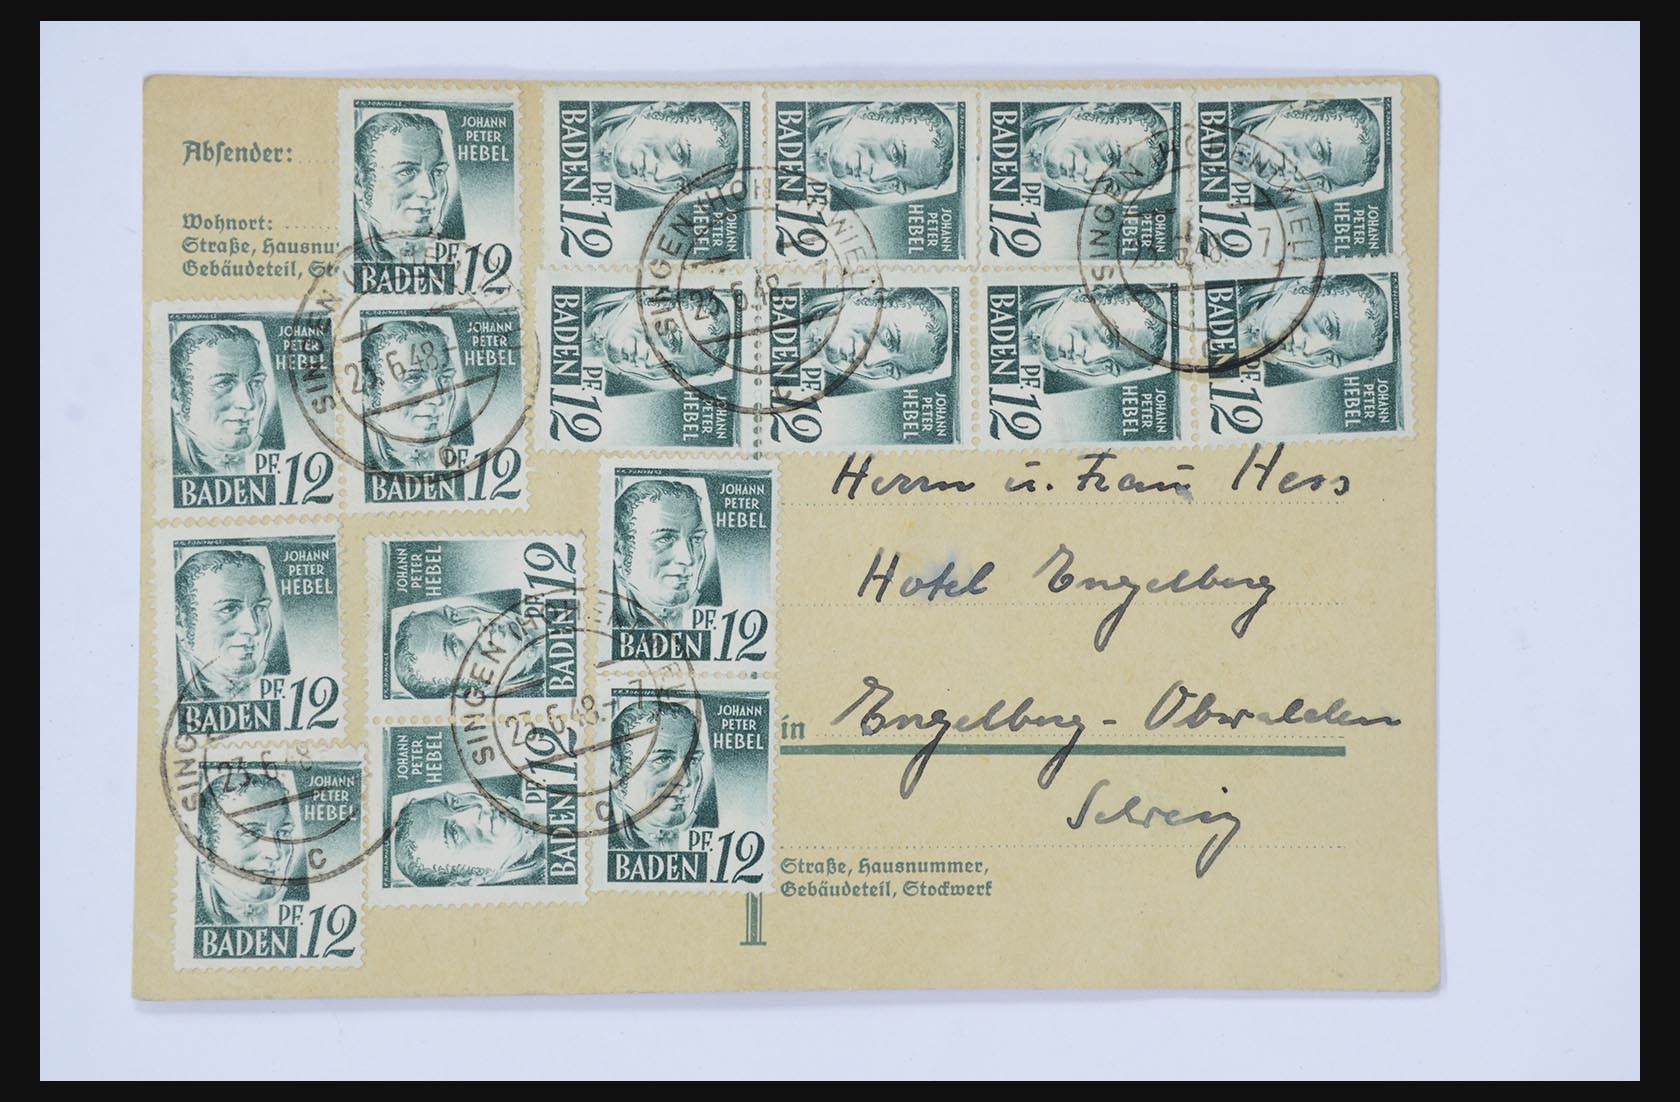 31581 039 - 31581 Duitsland brieven en FDC's 1945-1981.